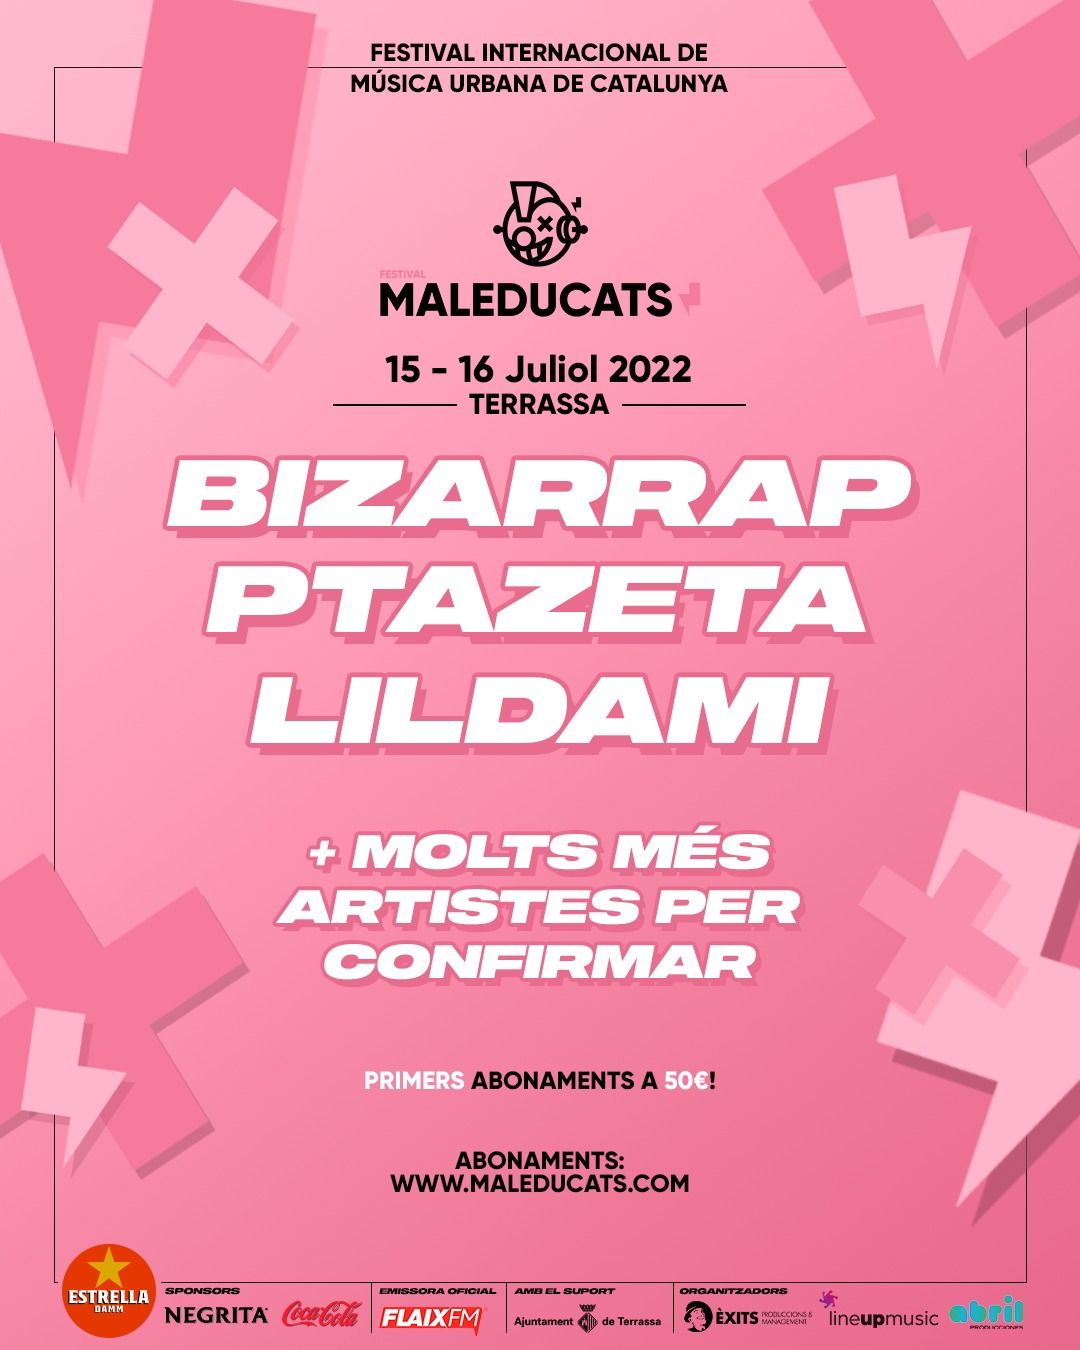 Concert de Bizarrap, Lildami, Ptazeta  - Festival Maleducats